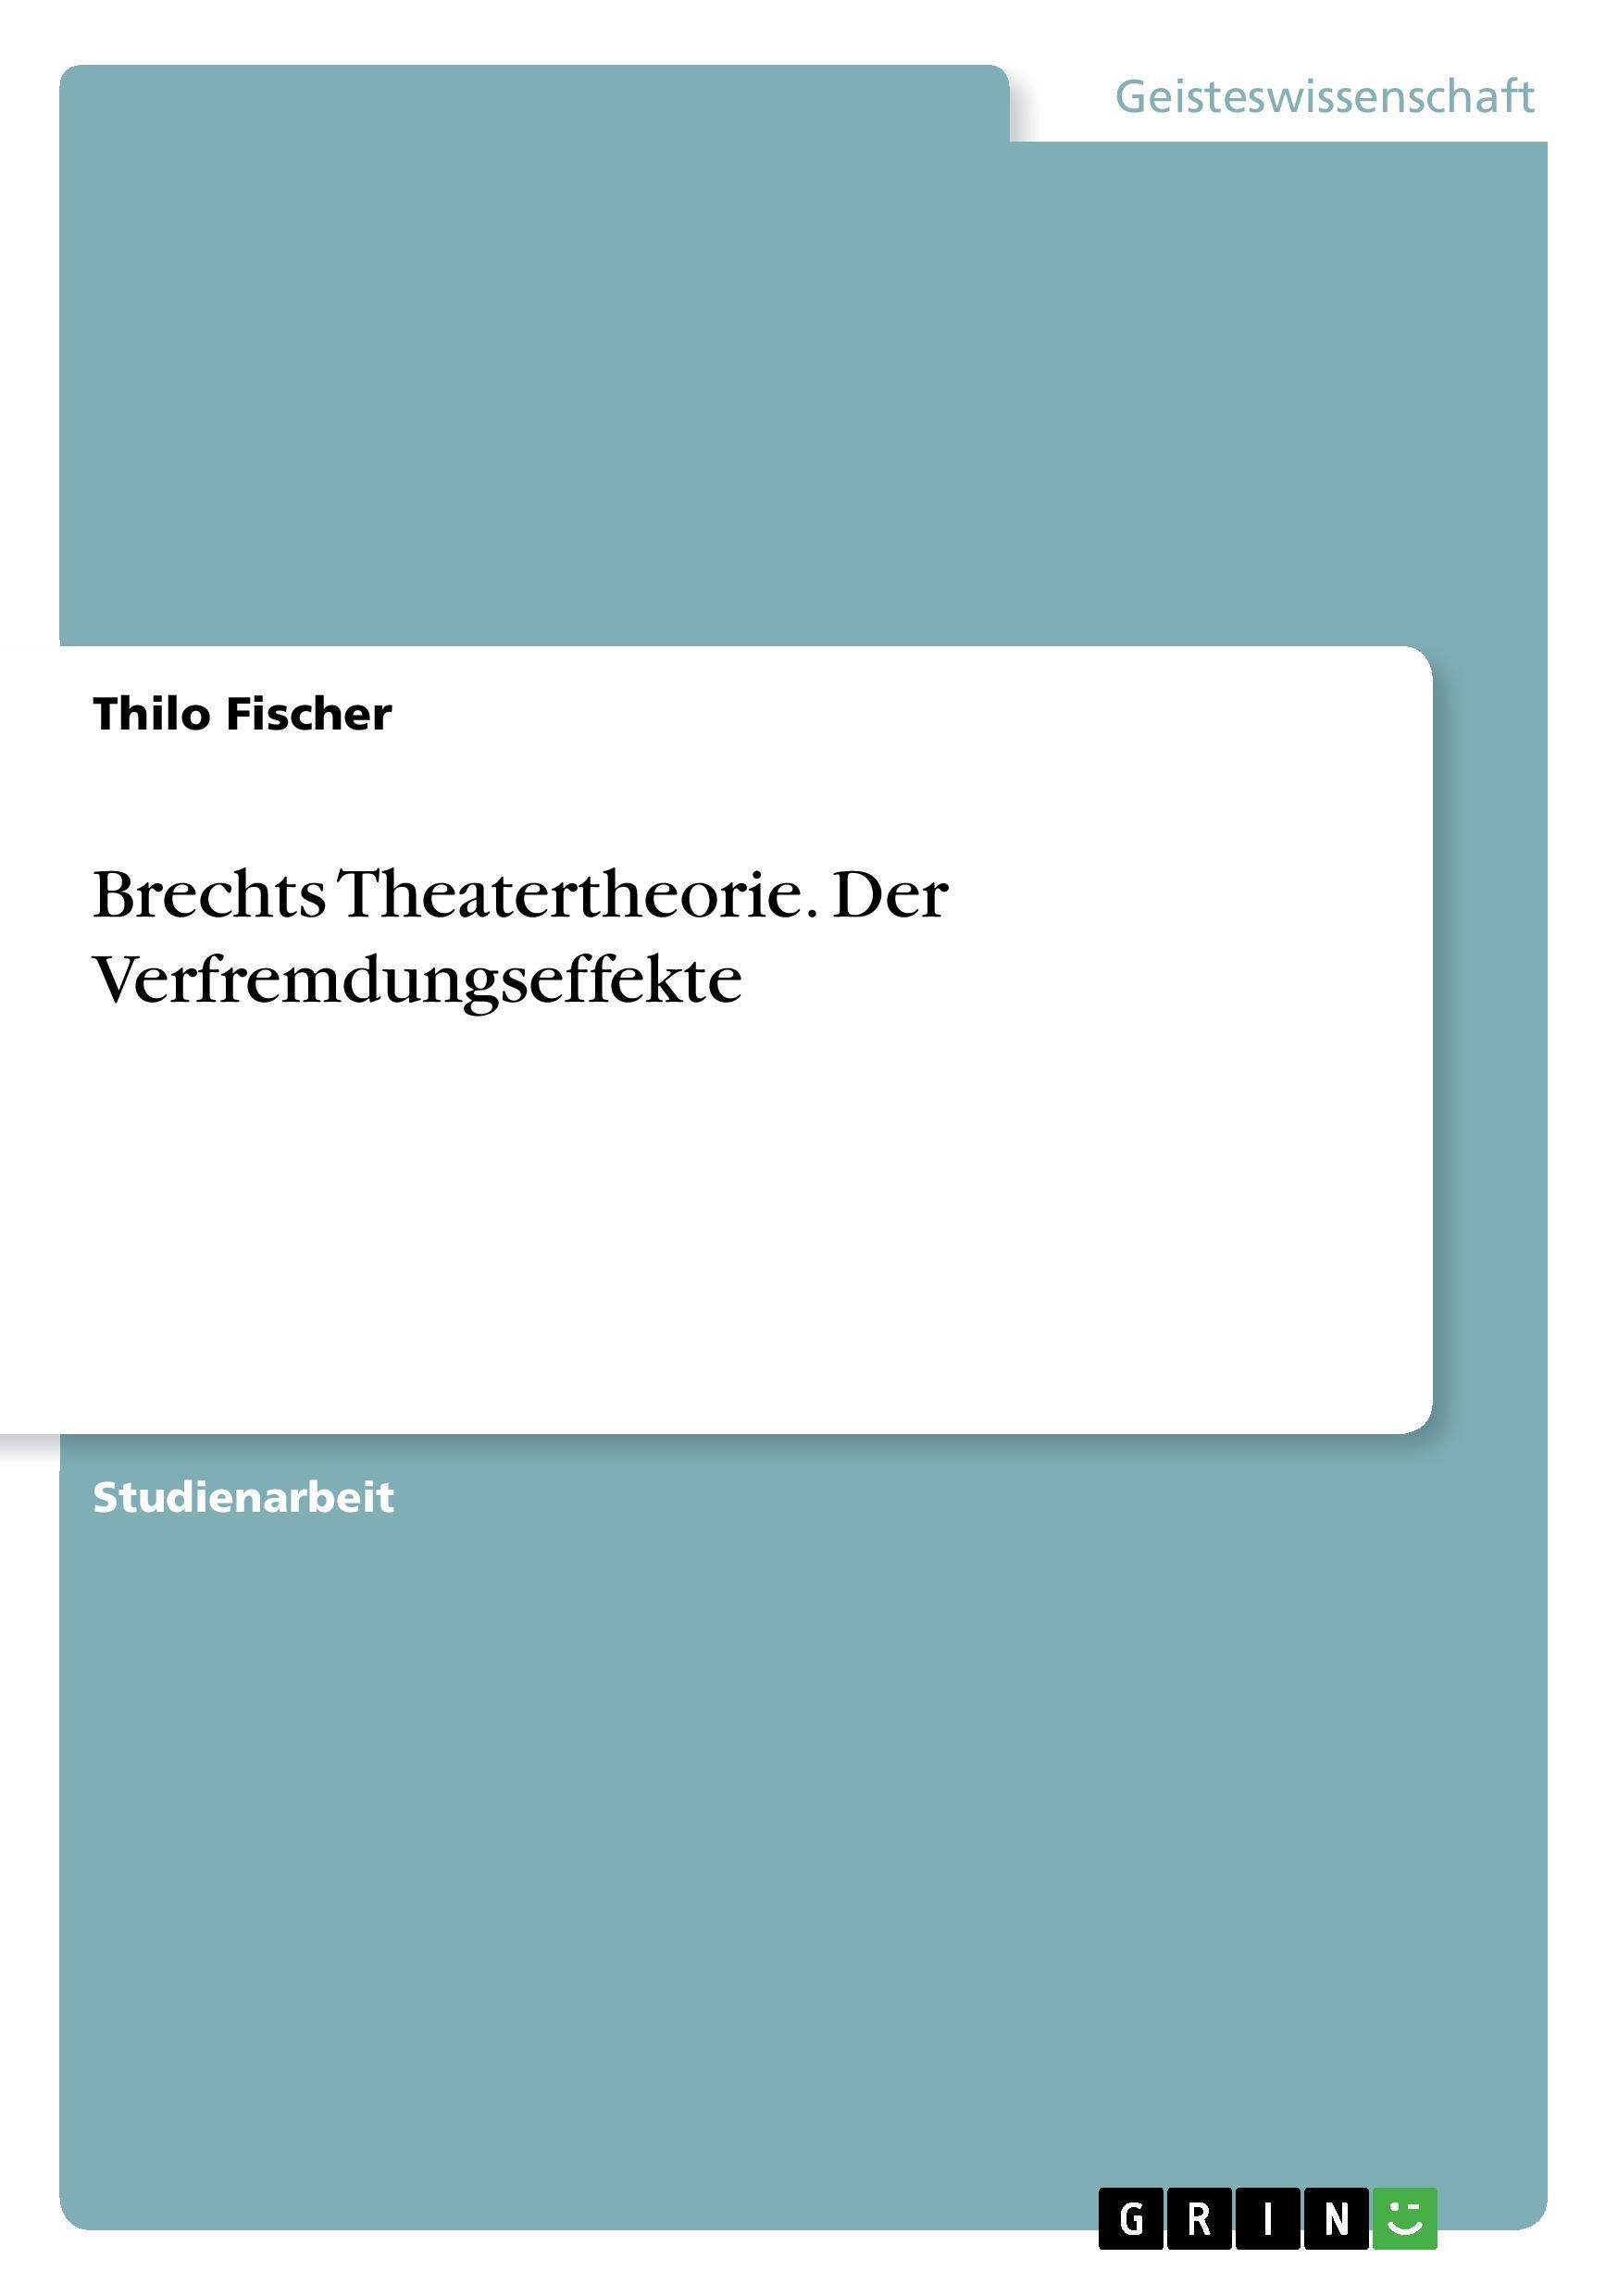 Brechts Theatertheorie. Der Verfremdungseffekte - Fischer, Thilo